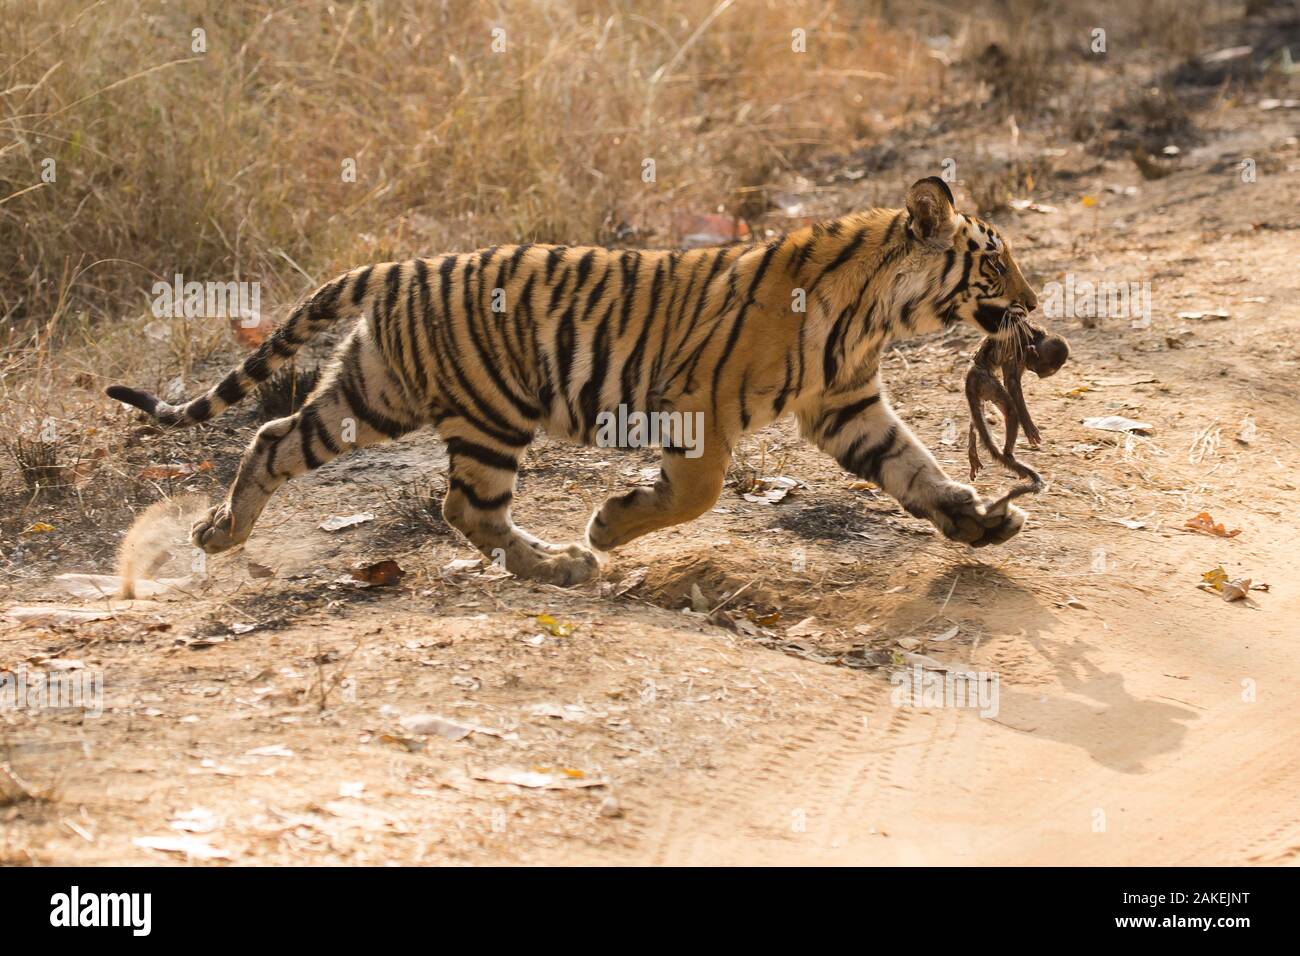 Tigre de Bengala (Panthera tigris tigris) hembra cub, de edades comprendidas entre los 8-10 meses, llevando muerto macacos Rhesus (Macaca mulatta) infantil, Parque Nacional Bandhavgarh, Madhya Pradesh, India. Febrero. Foto de stock